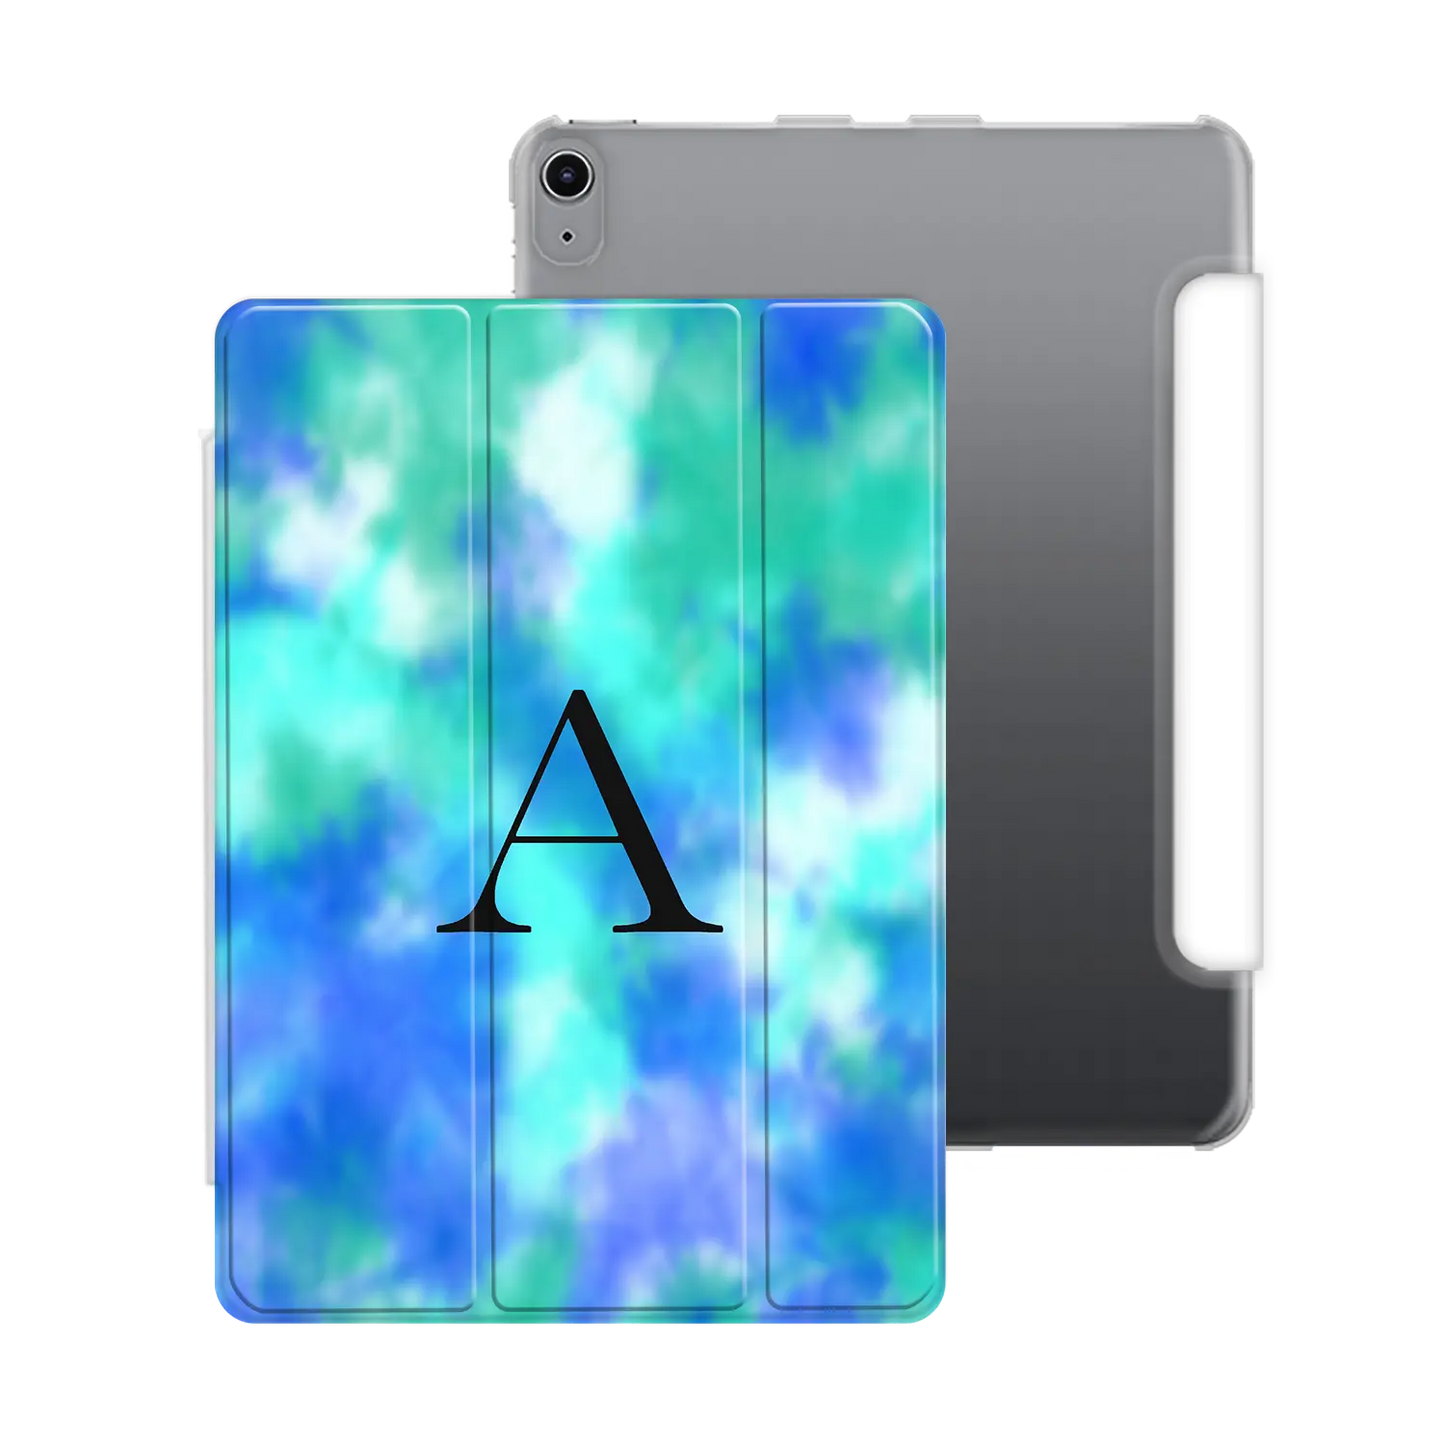 Tie Dye - Personalised iPad Case